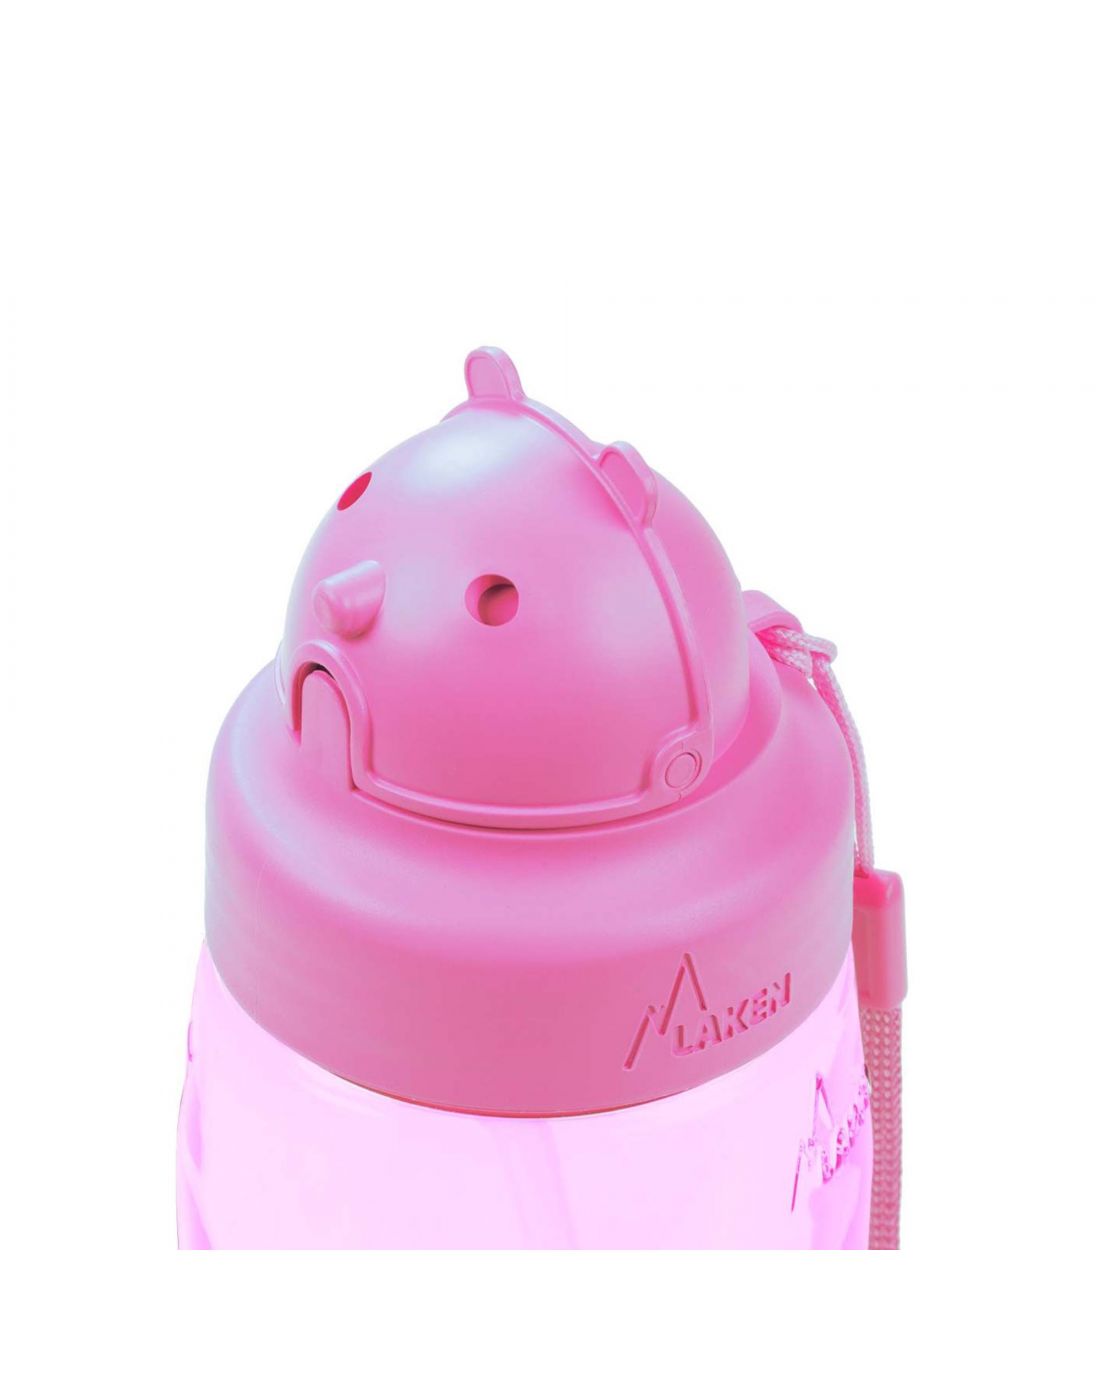 Παιδικό Μπουκάλι Με καλαμάκι Ροζ Imaginarium